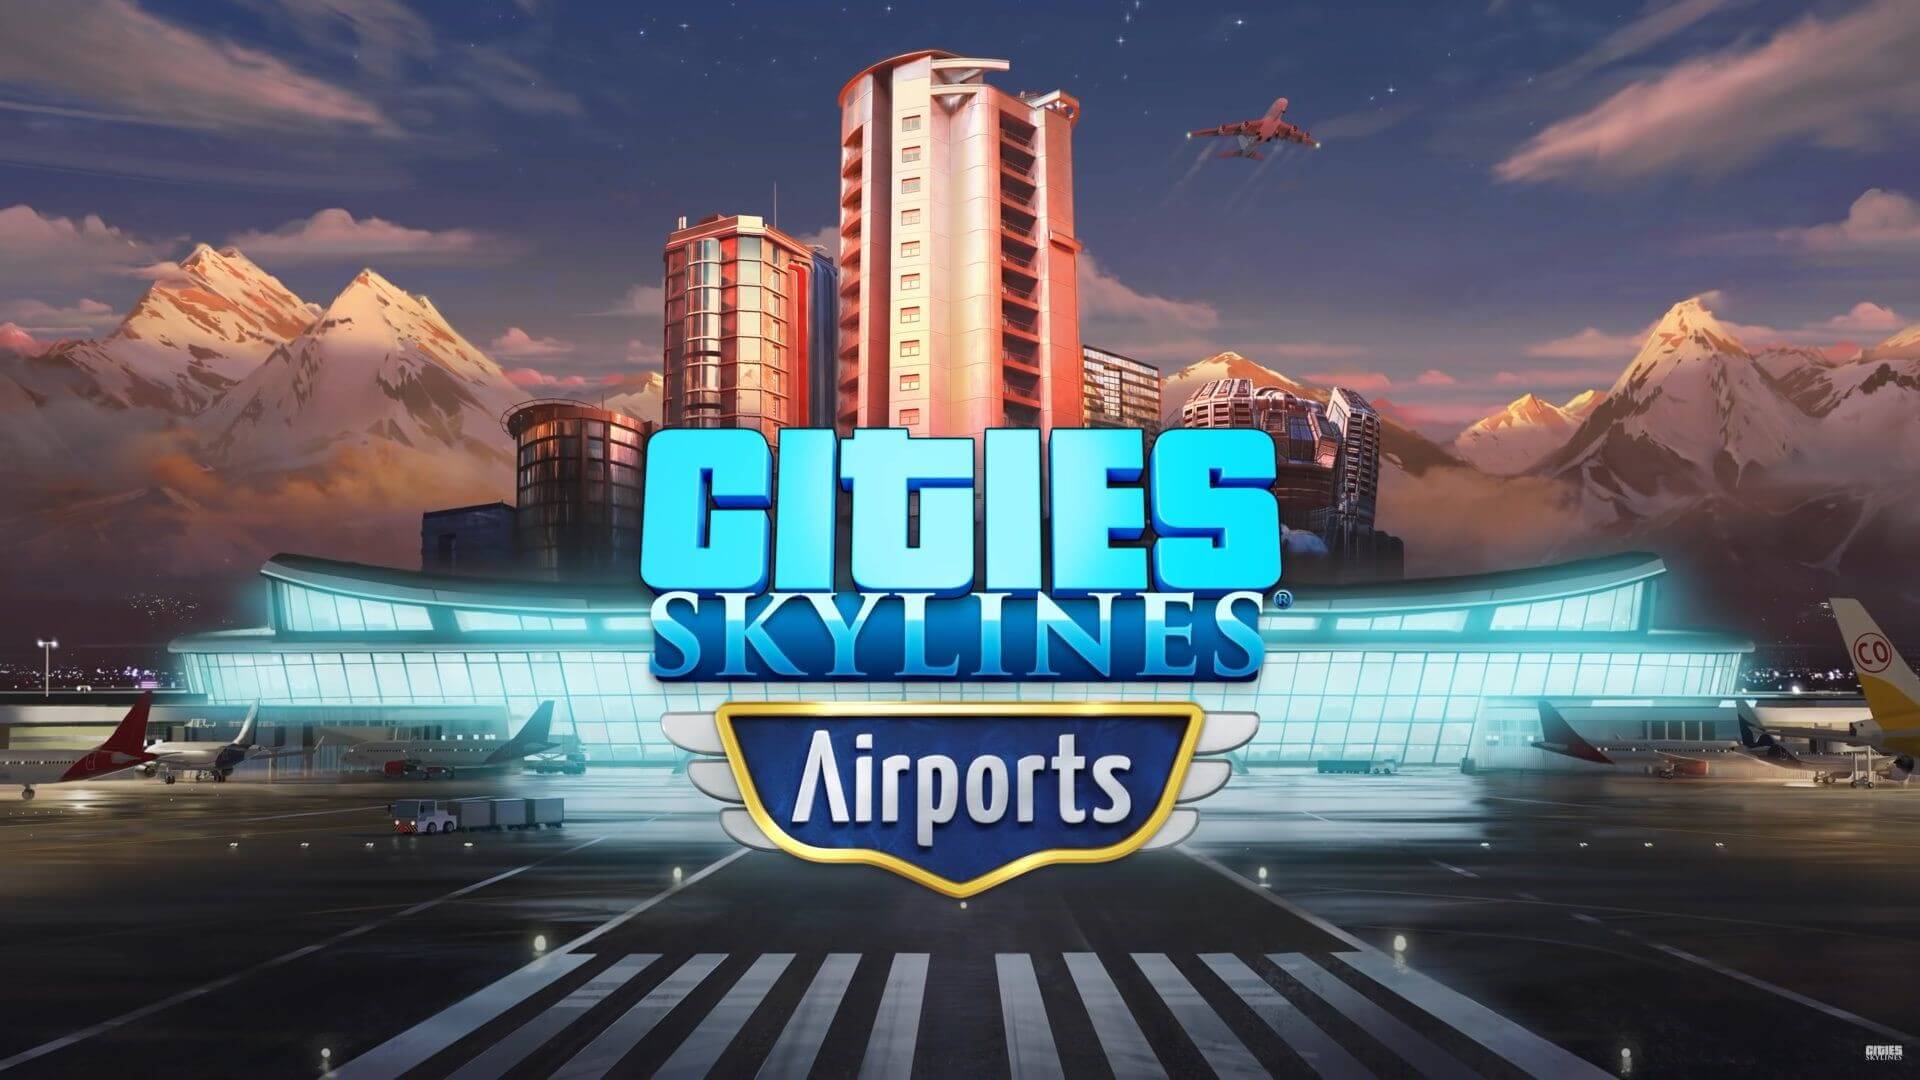 Cities Skyline kann nicht installiert werden? (PC, Computerspiele, Steam)